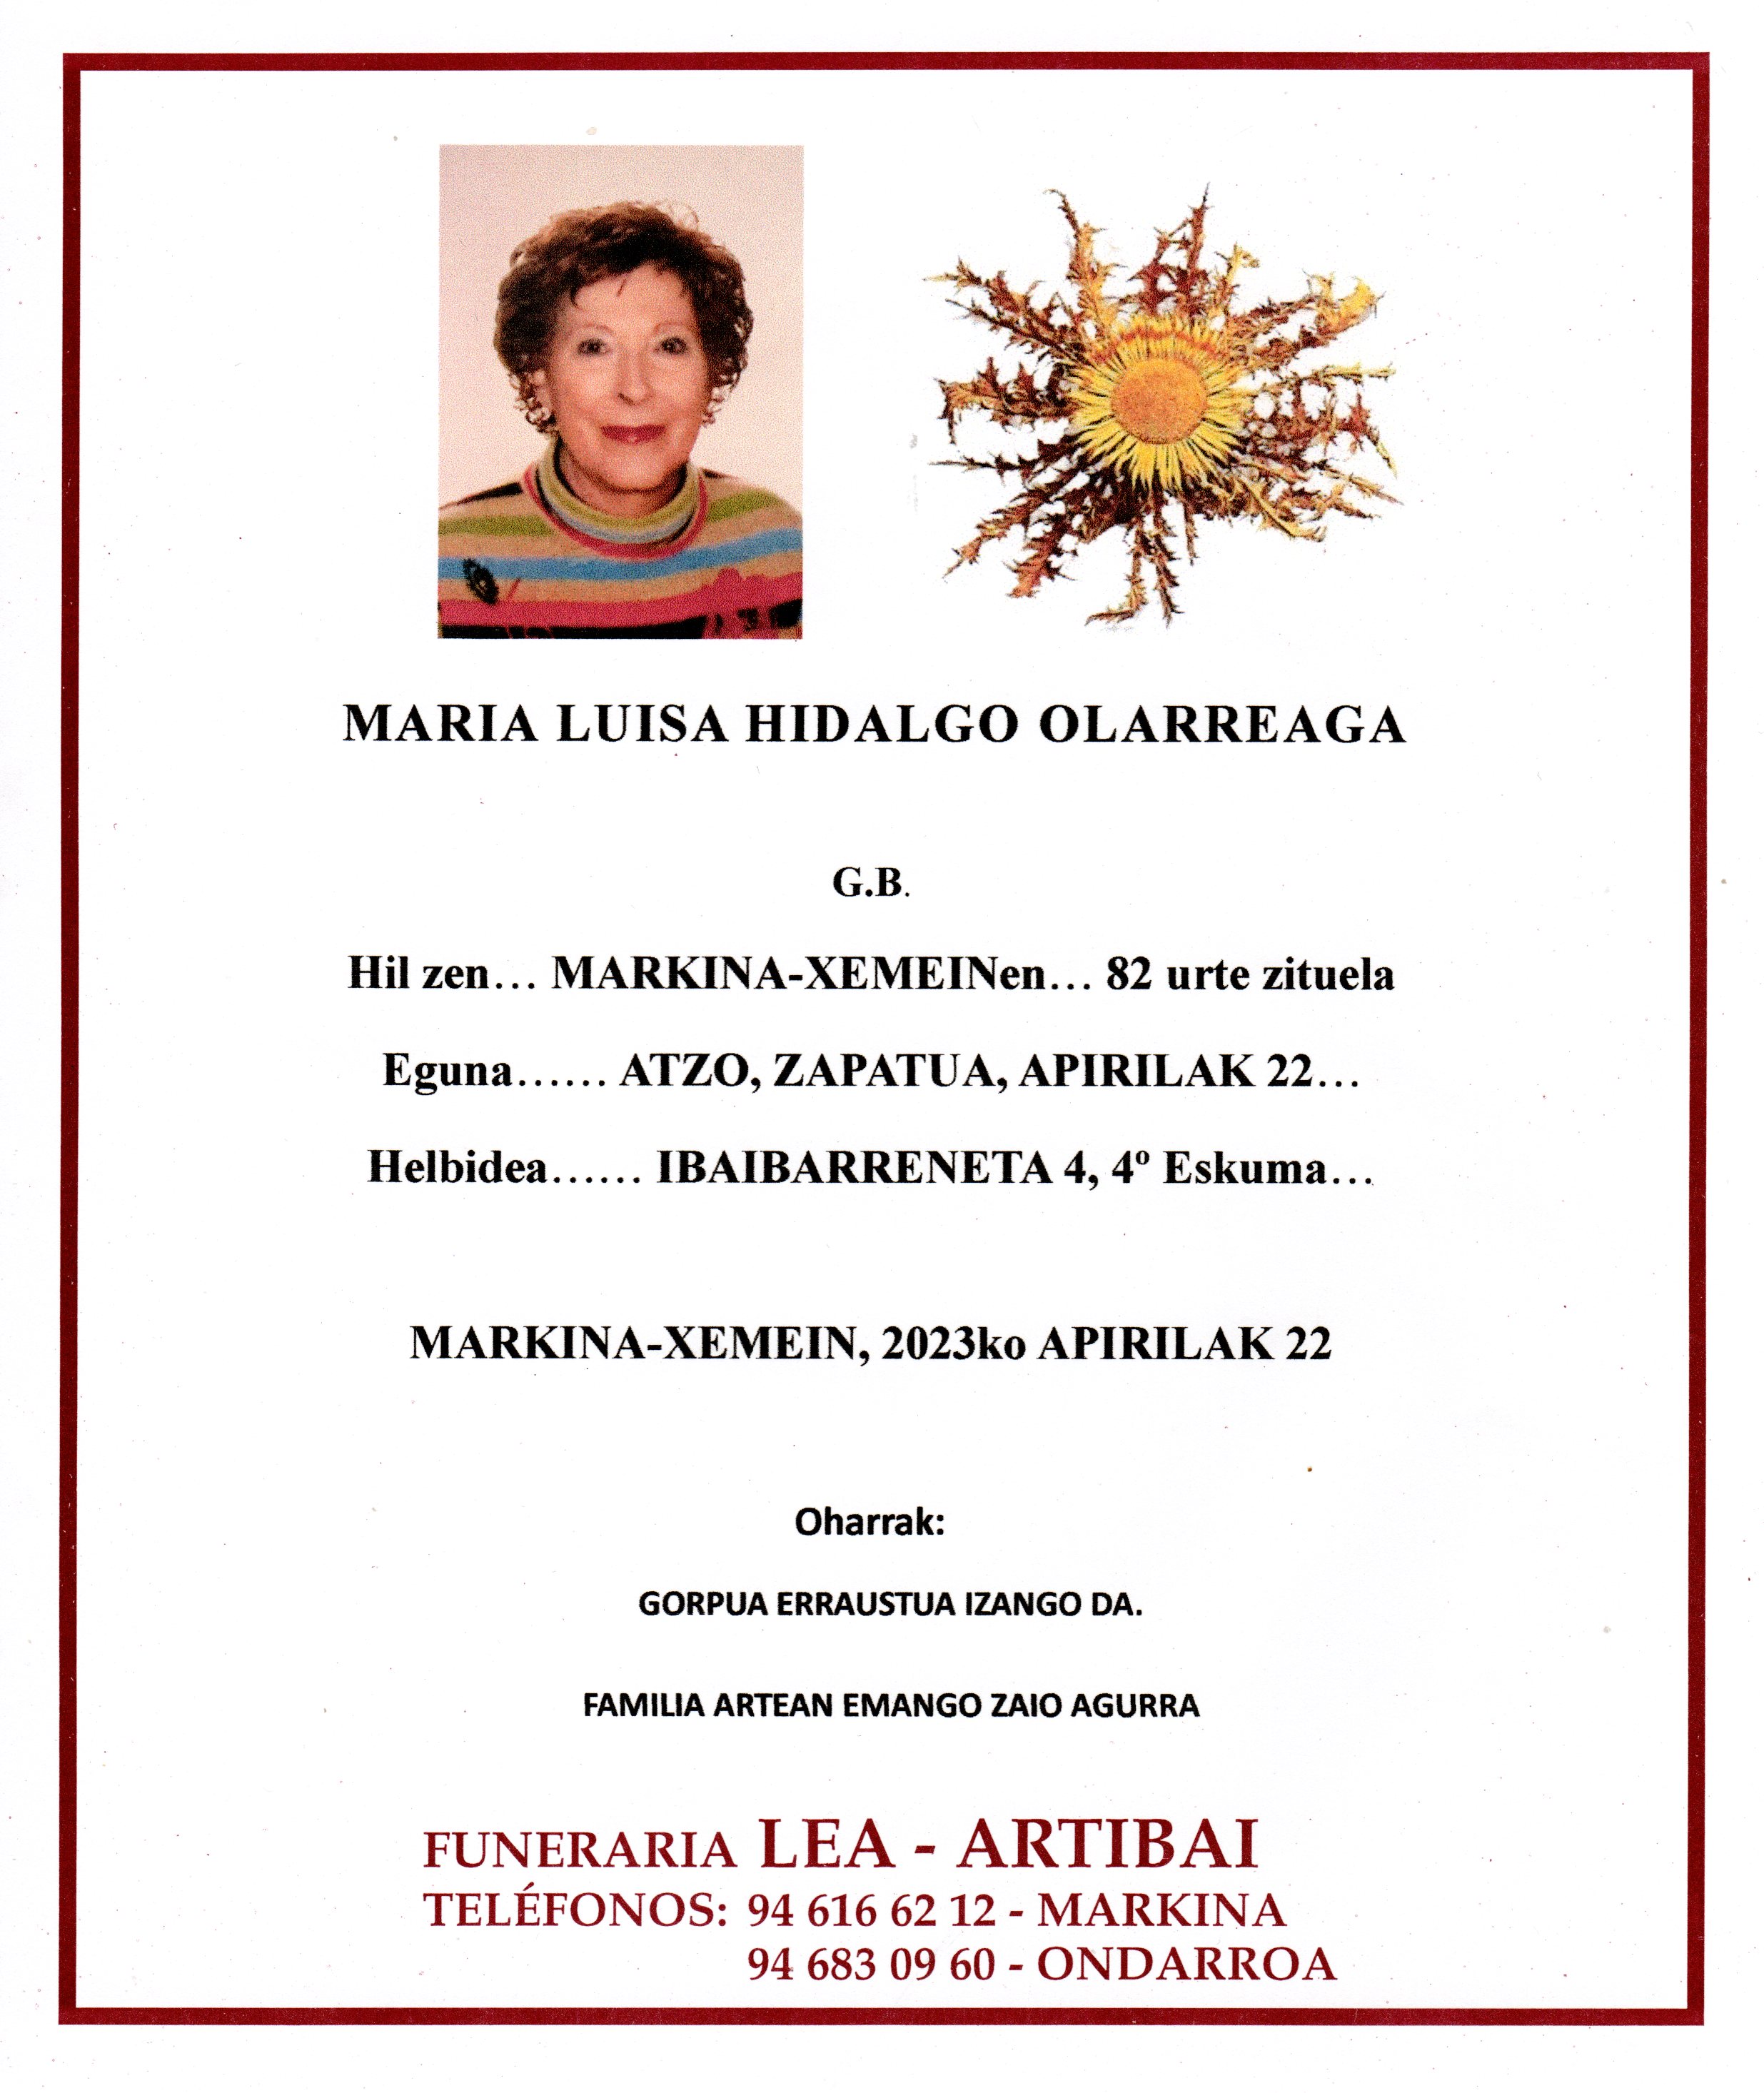 Maria Luisa Hidalgo Olarreaga